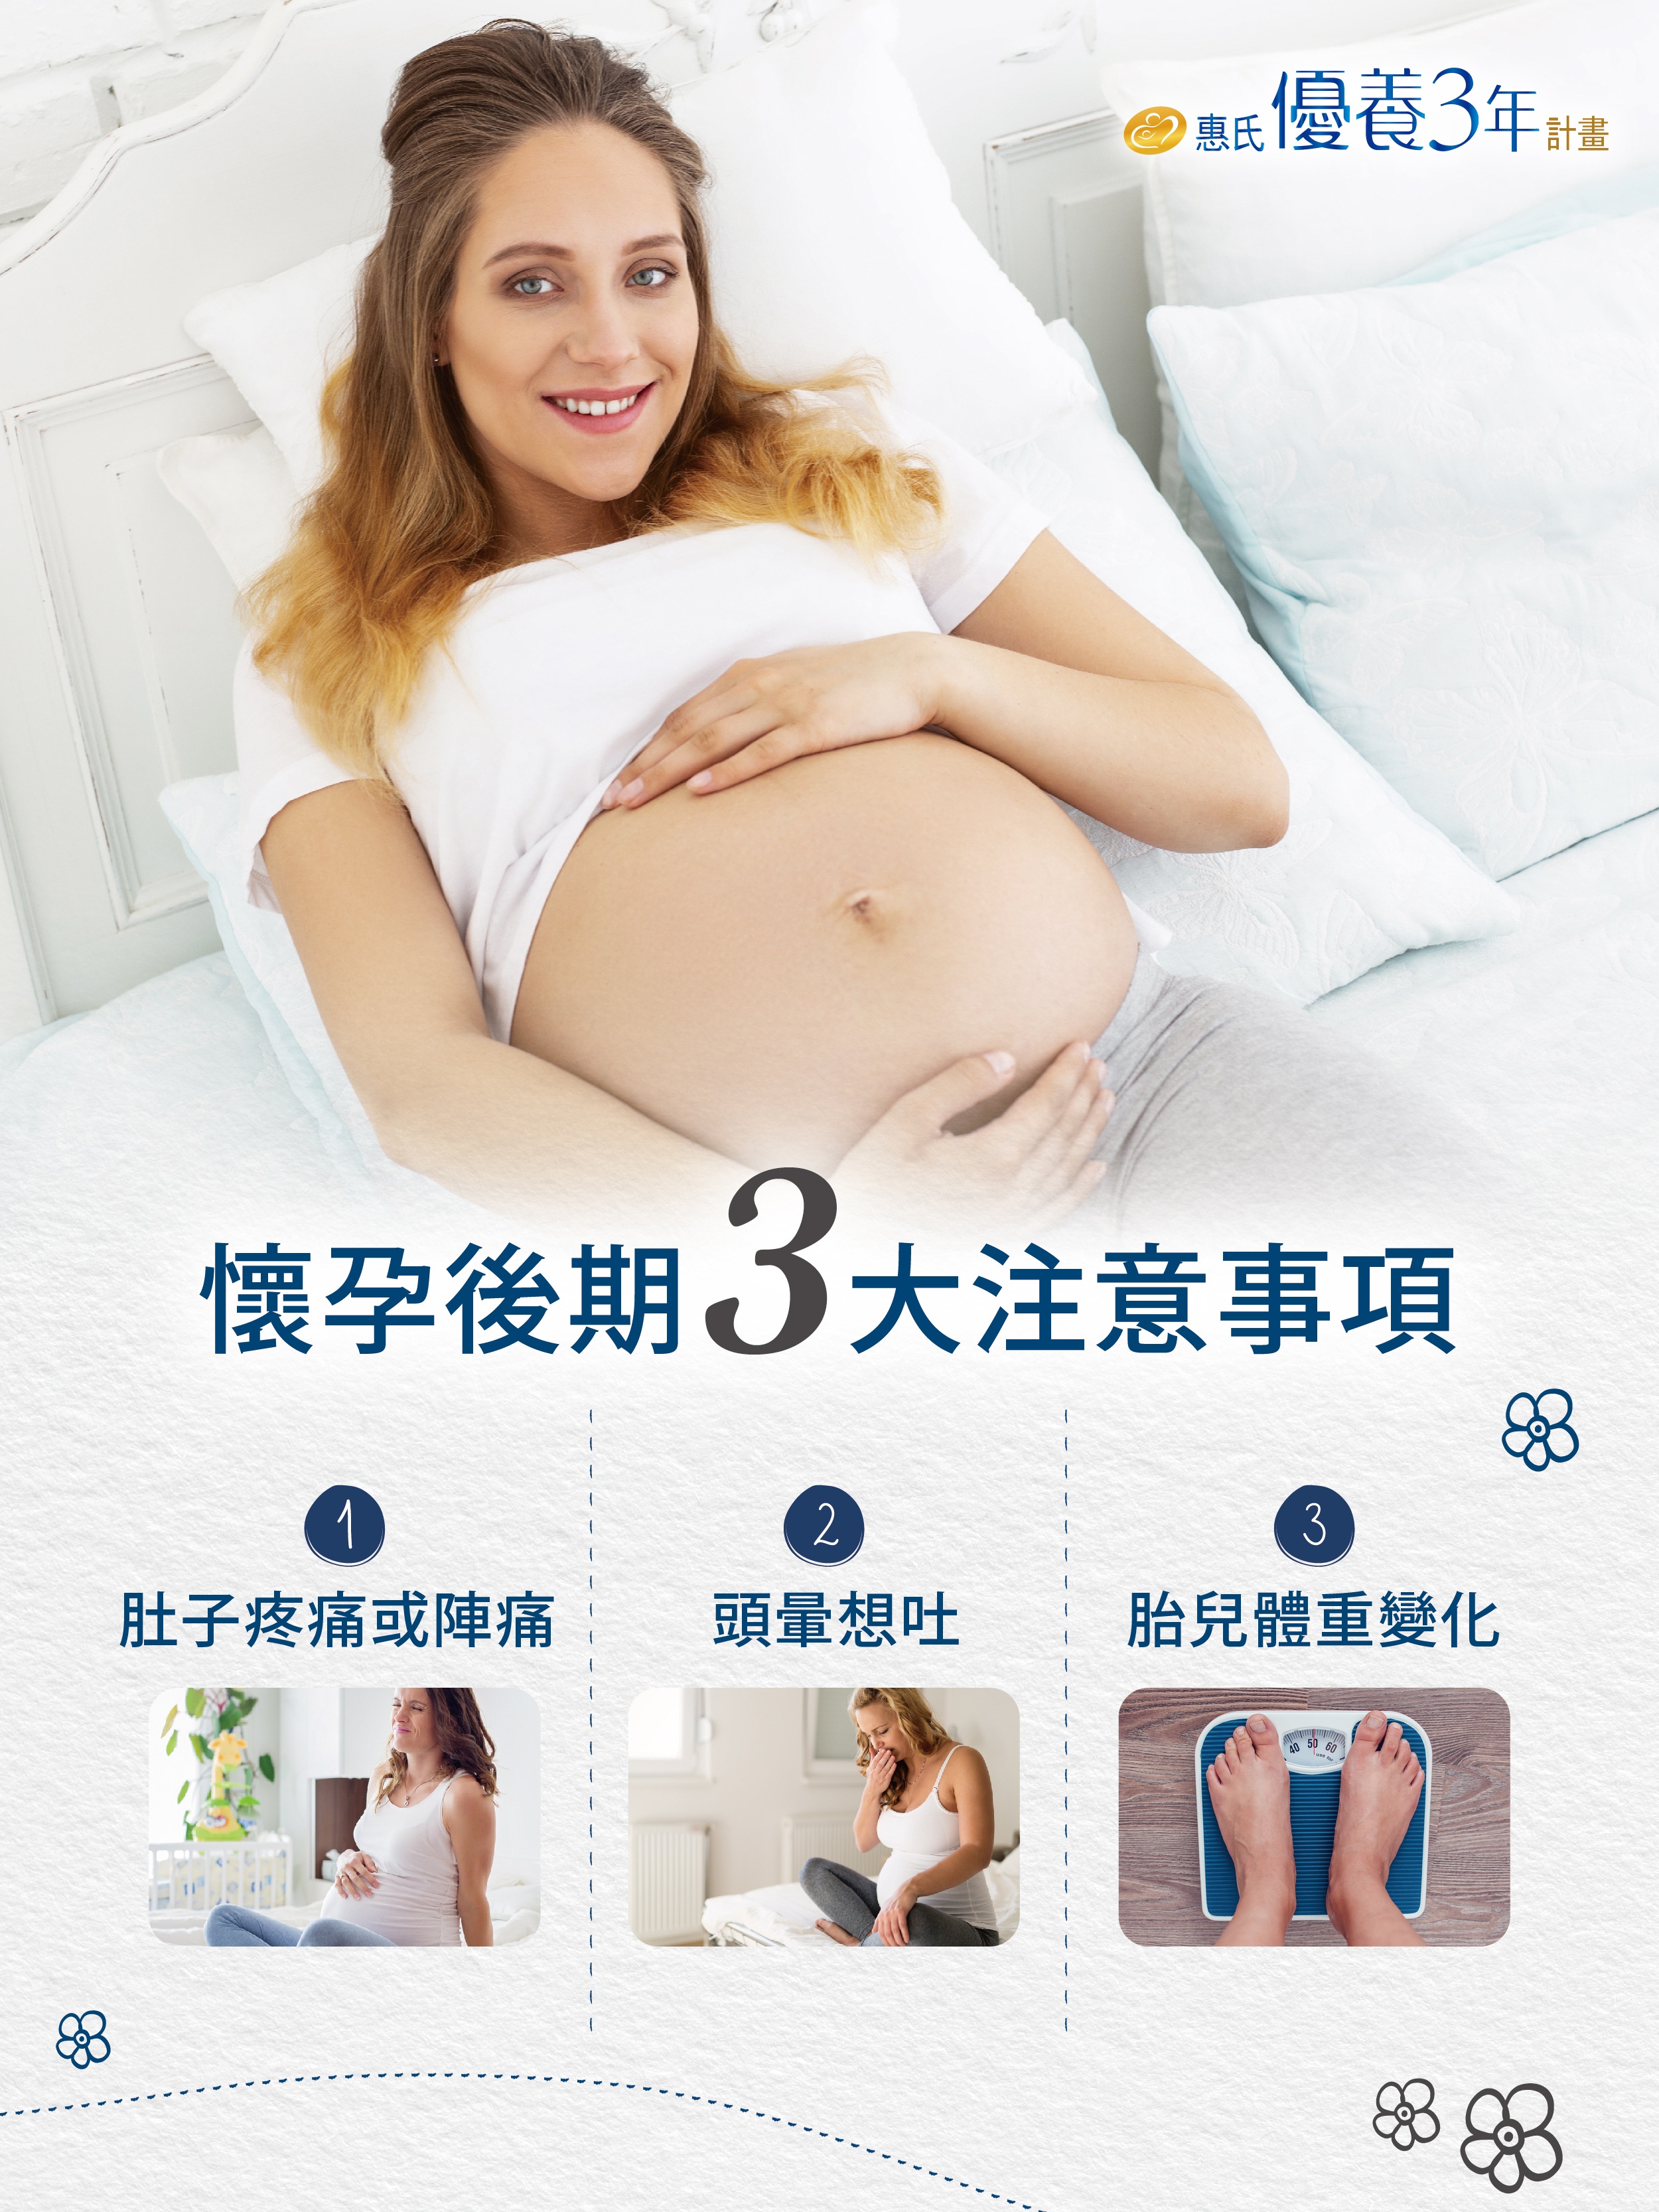 懷孕後期3大注意事項